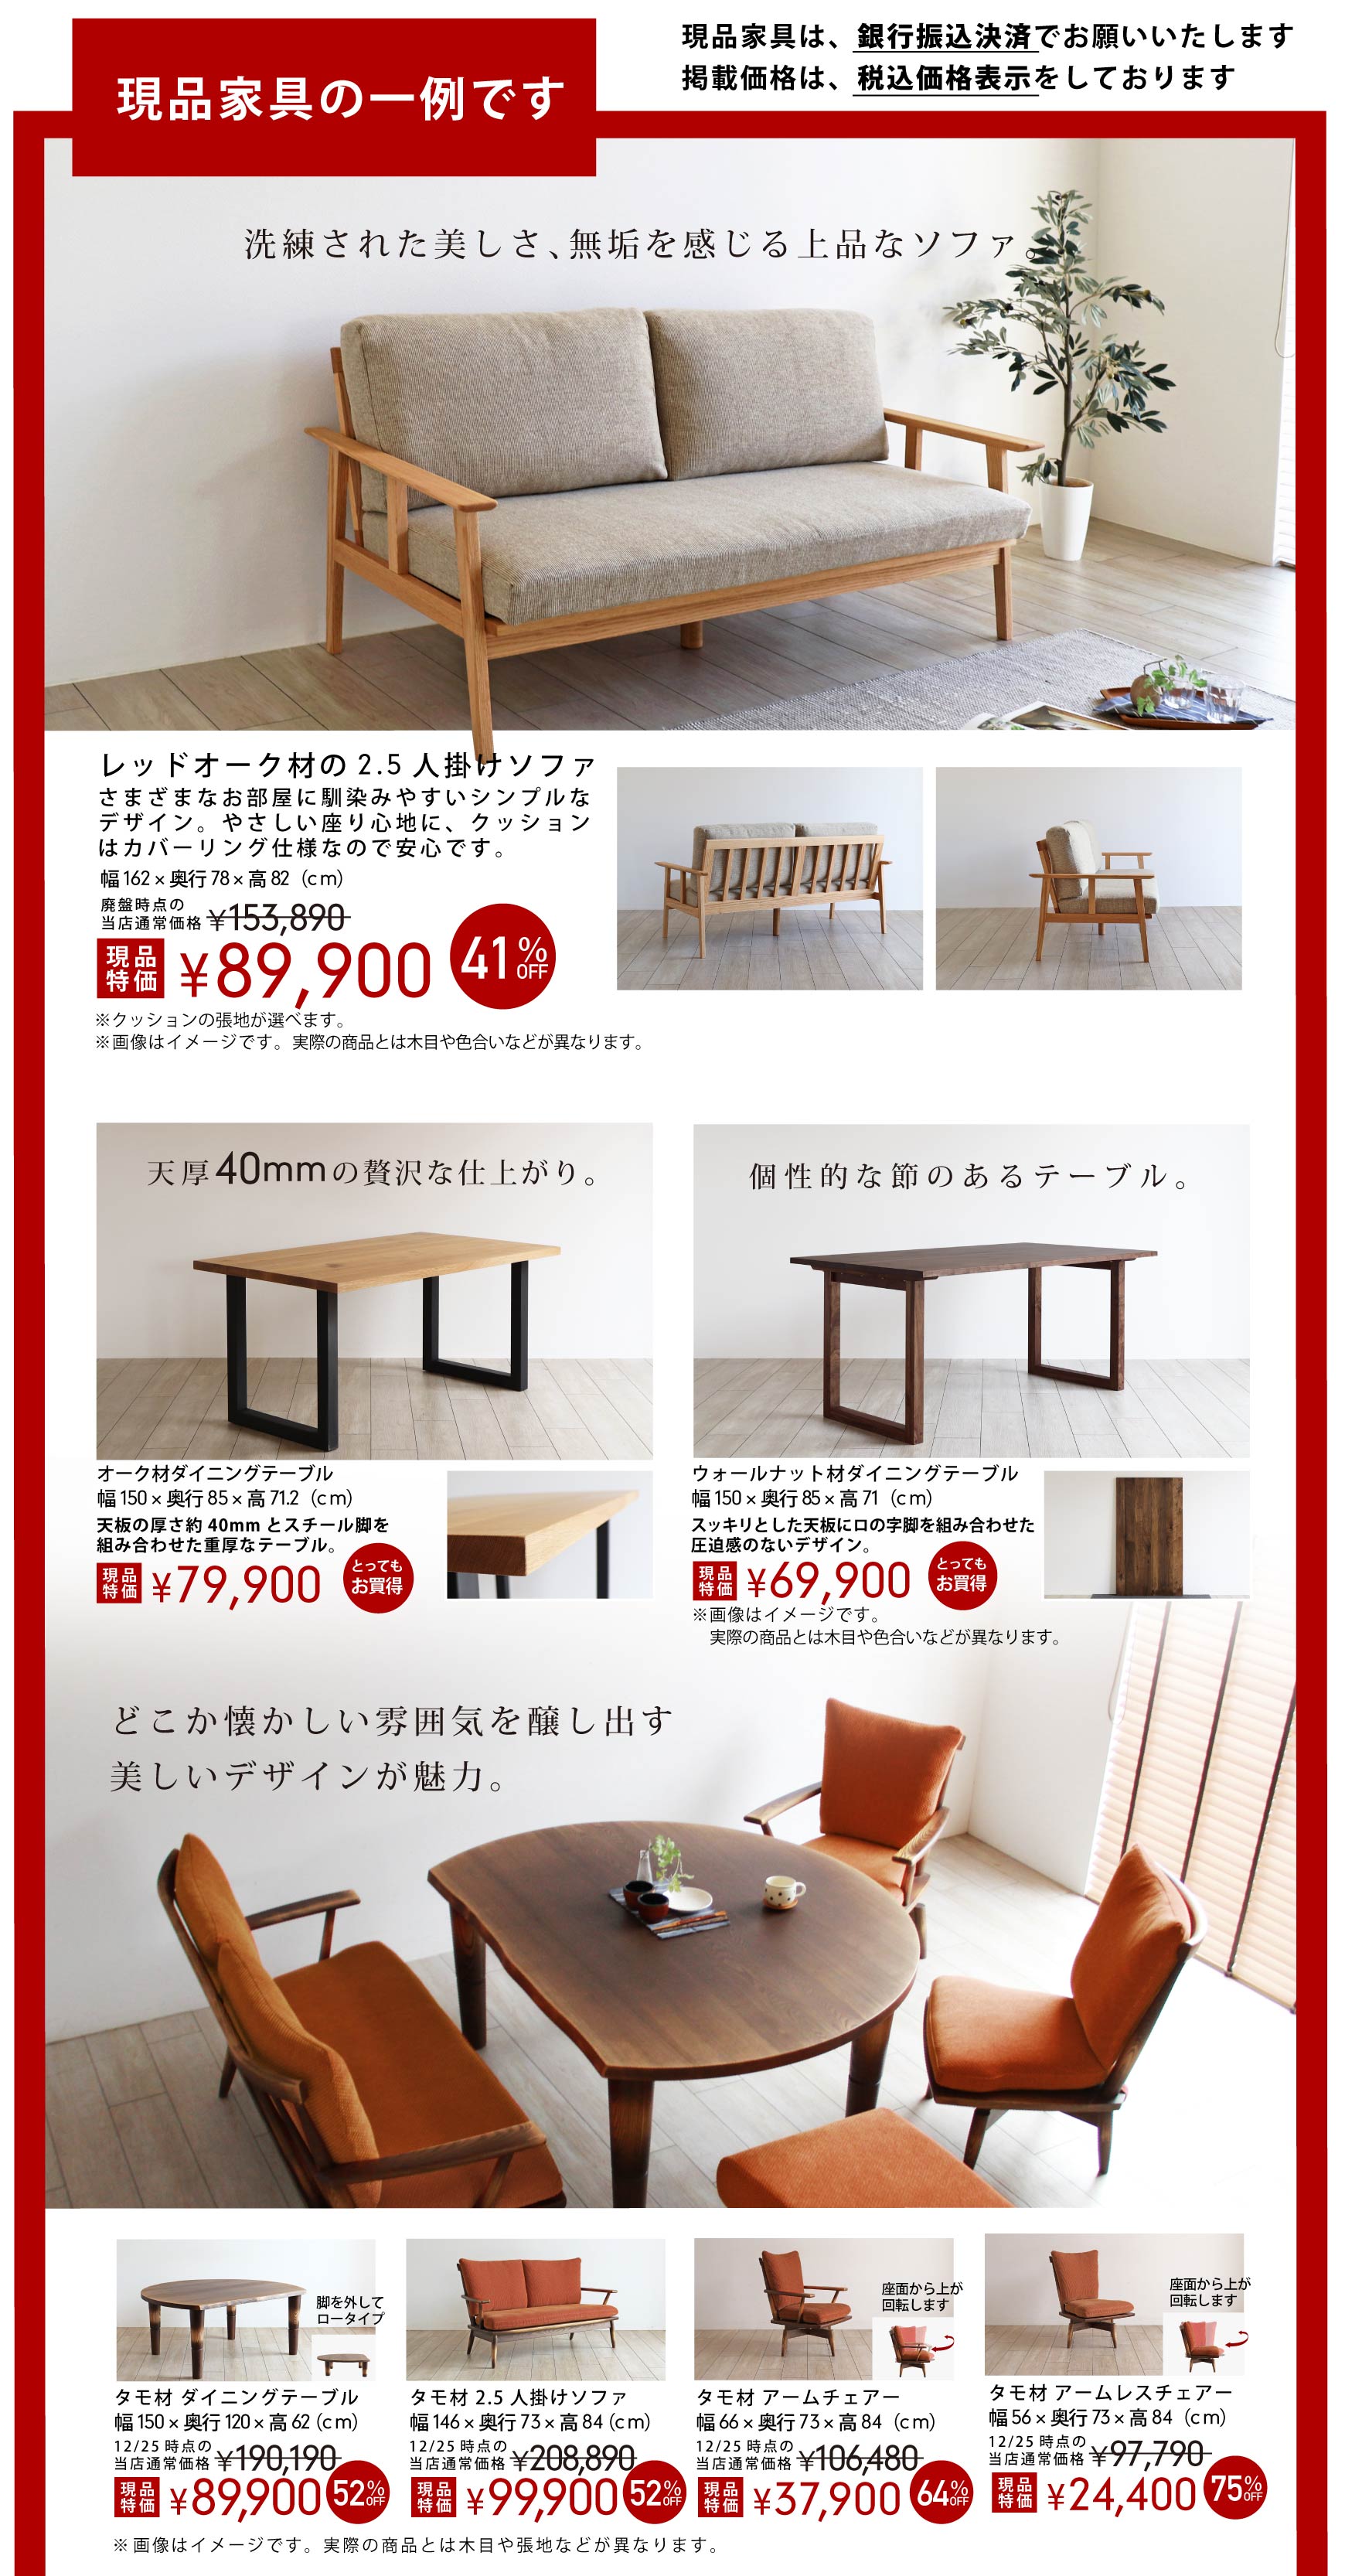 現品家具の一例をご紹介。掲載商品以外にも現品限りの家具を展示しております。お得な価格と品質を実際に見てお確かめください。